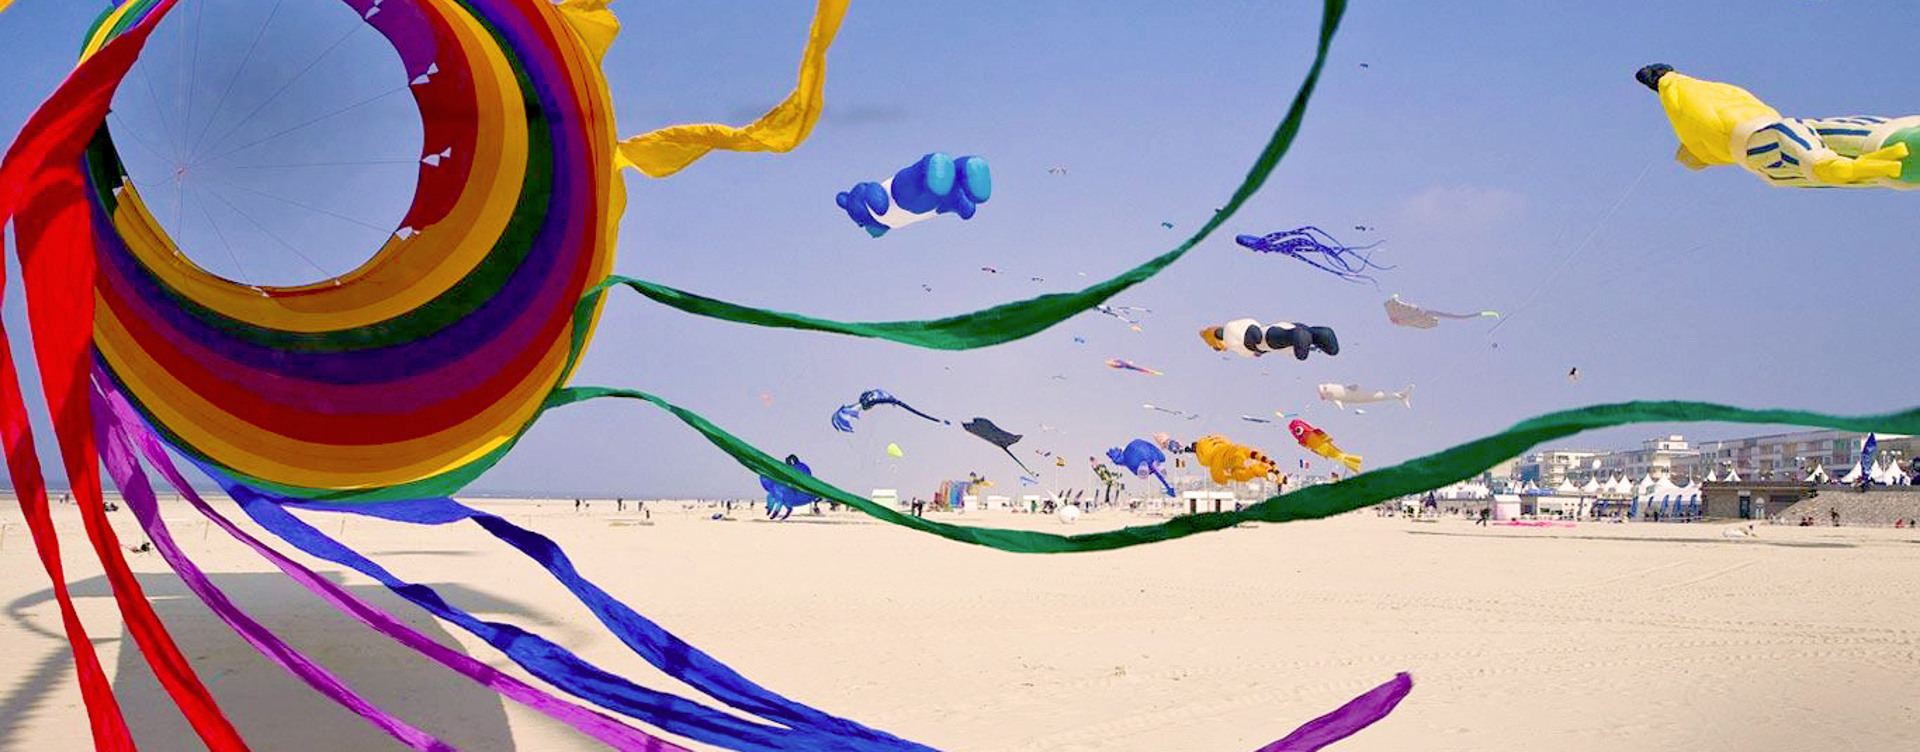 Bewonder het International Kite Festival
in Berck-sur-Mer!